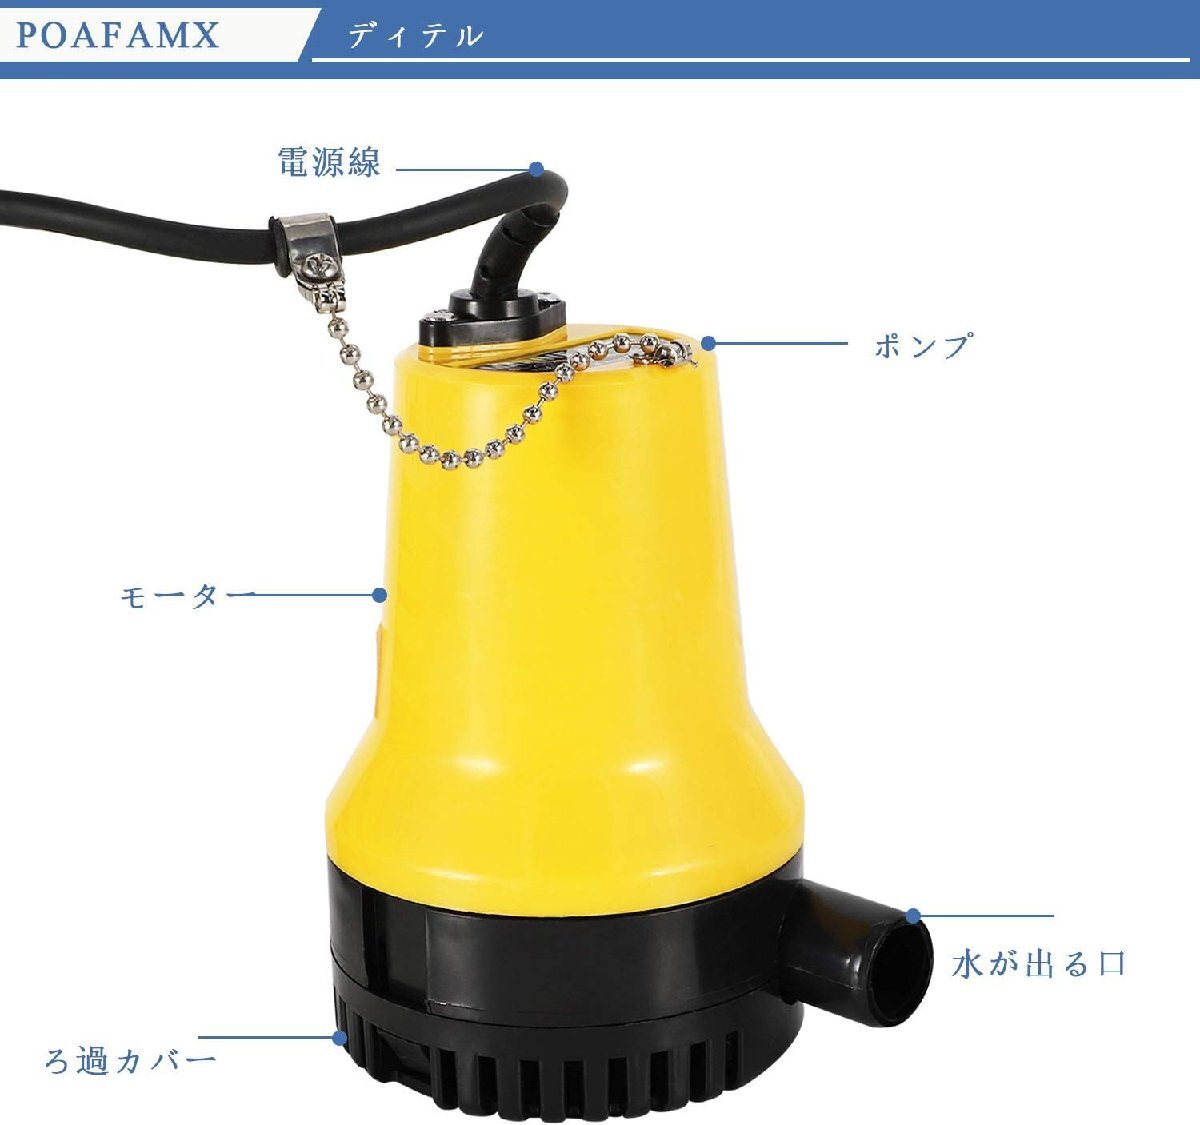 給水&排水ポンプ 小型DCポンプ 循環ポンプ 給水・排水ポンプ 水中ポンプ 12V 静音設計 水槽 吐出量70L/min 最大揚程4.0M 潜水インストール/_画像2